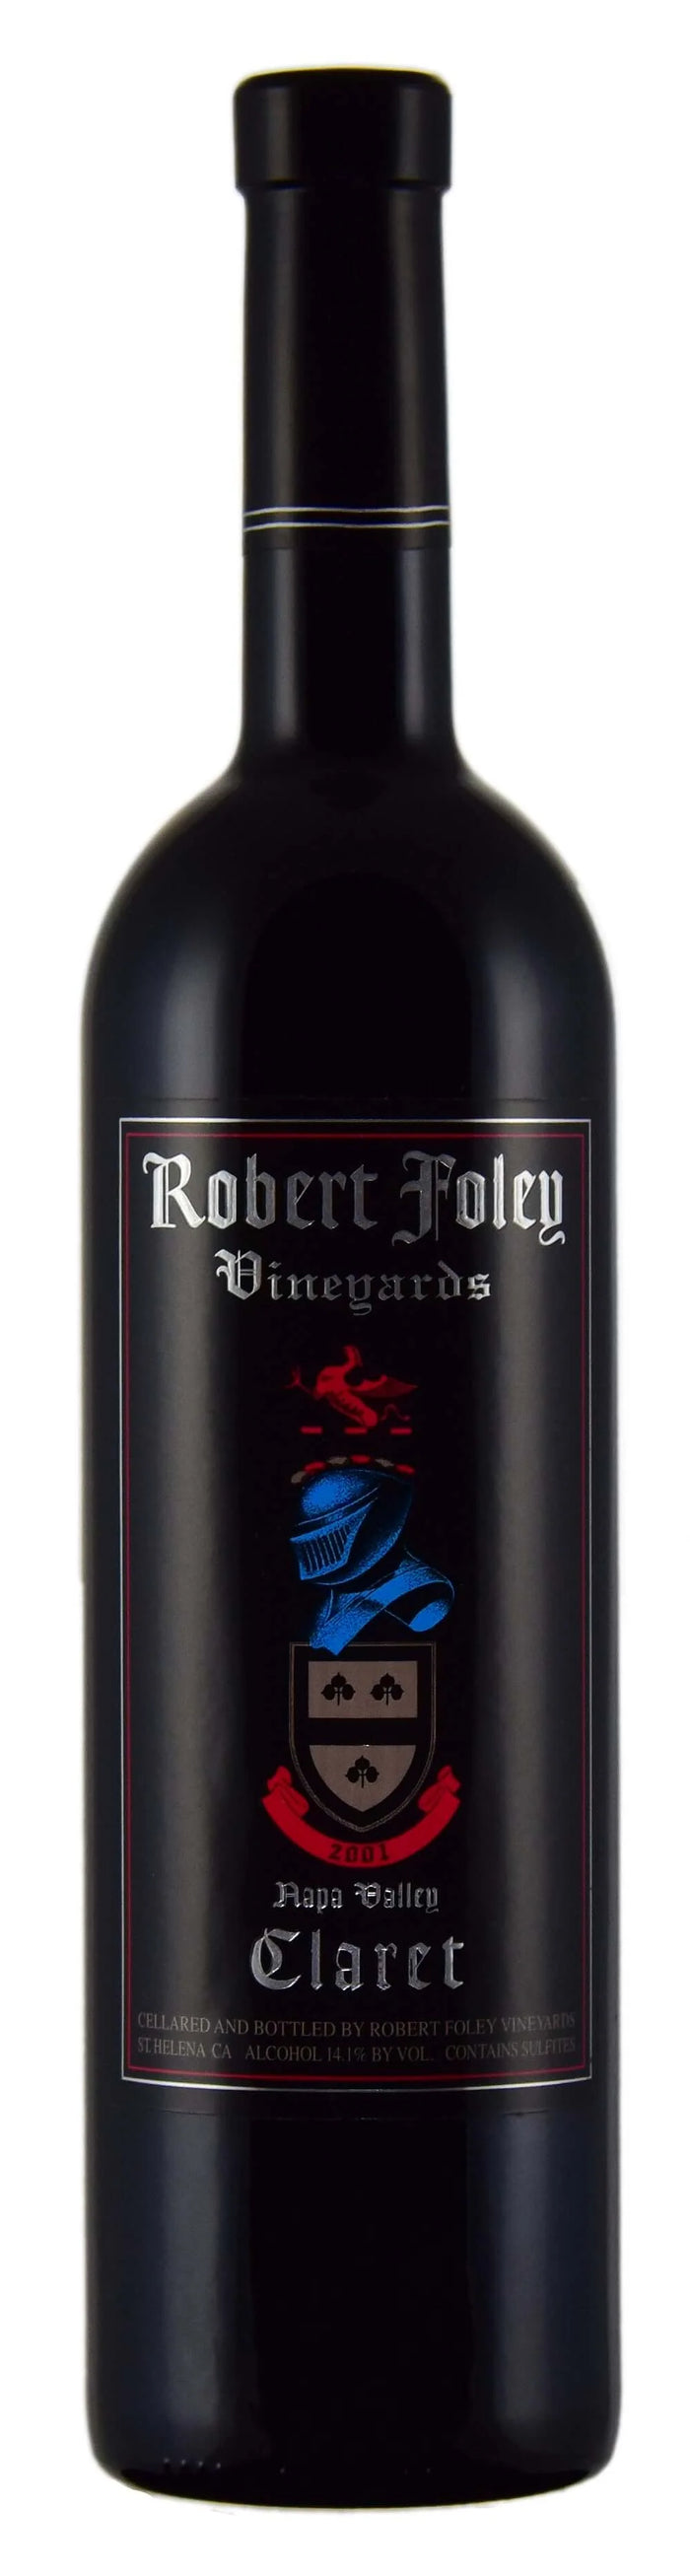 2001 | Robert Foley Wines | Claret